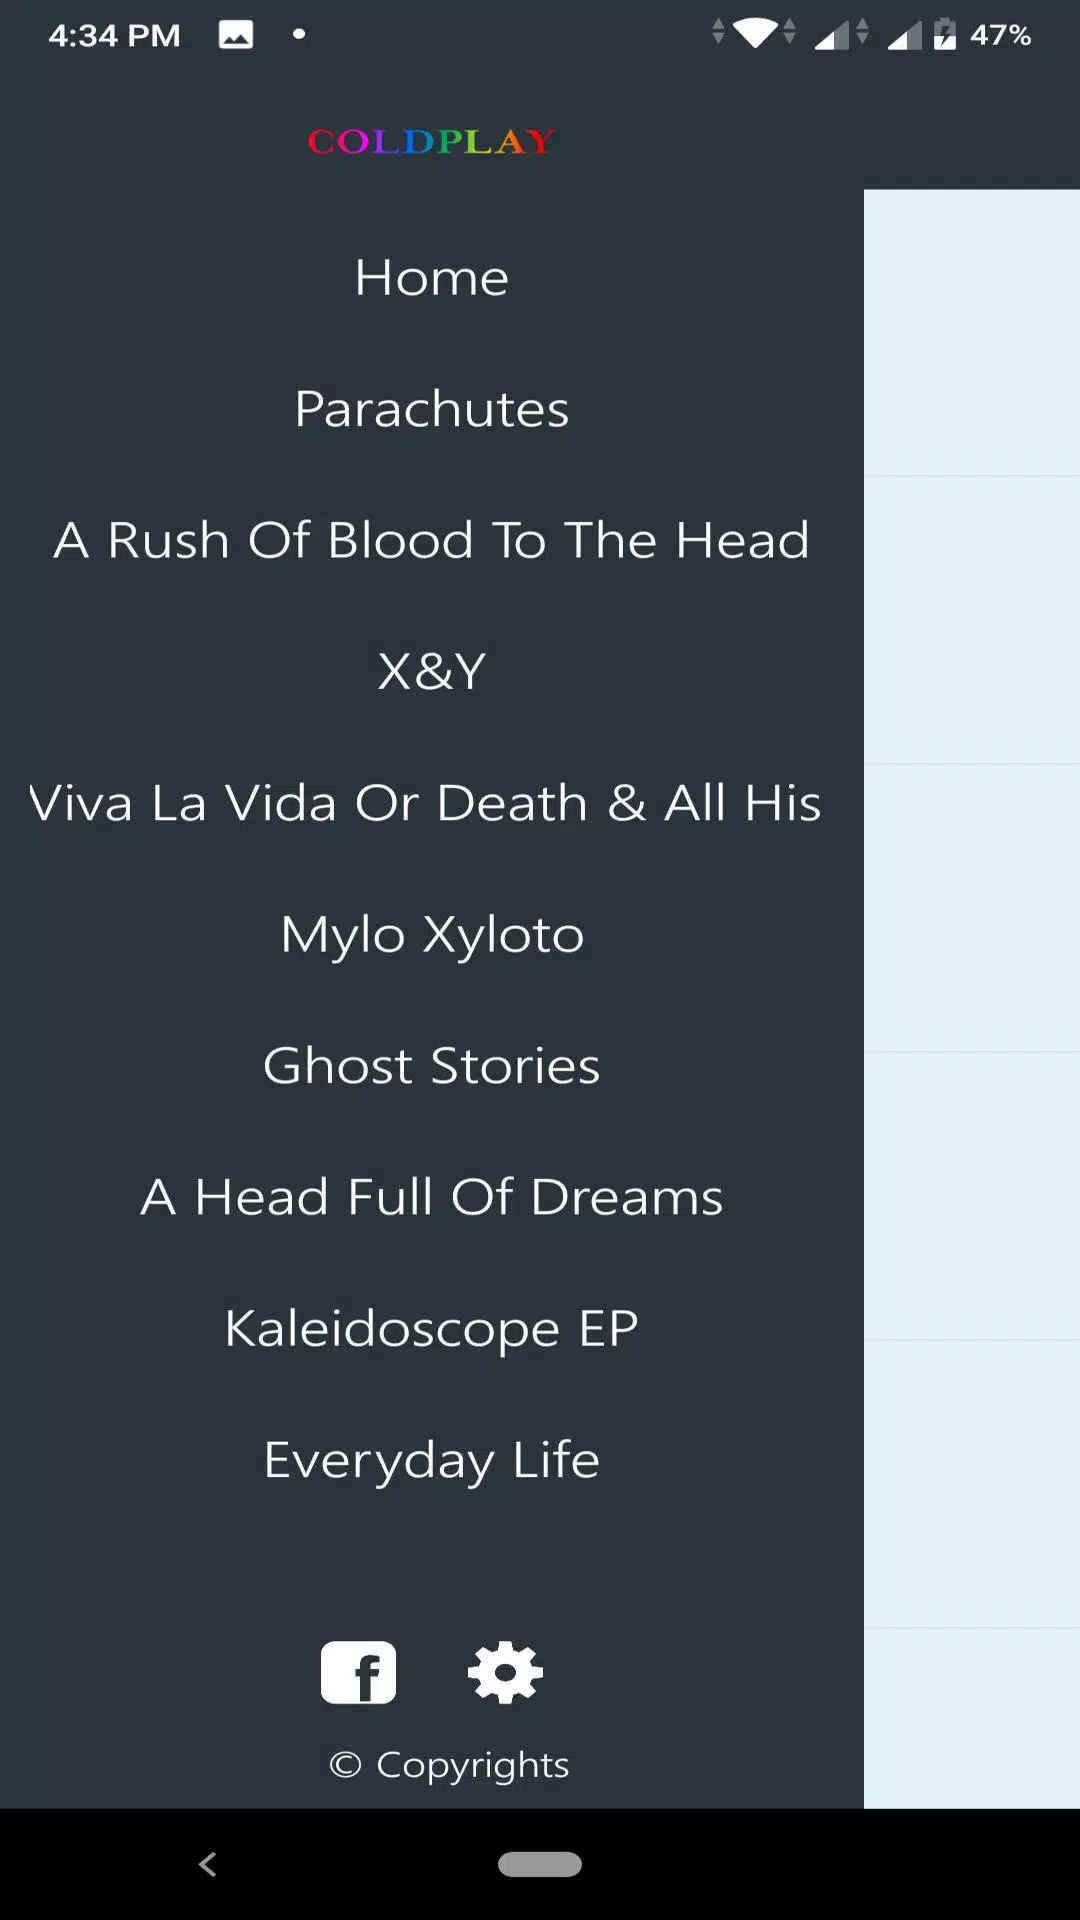 Descarga de APK de Coldplay discography para Android